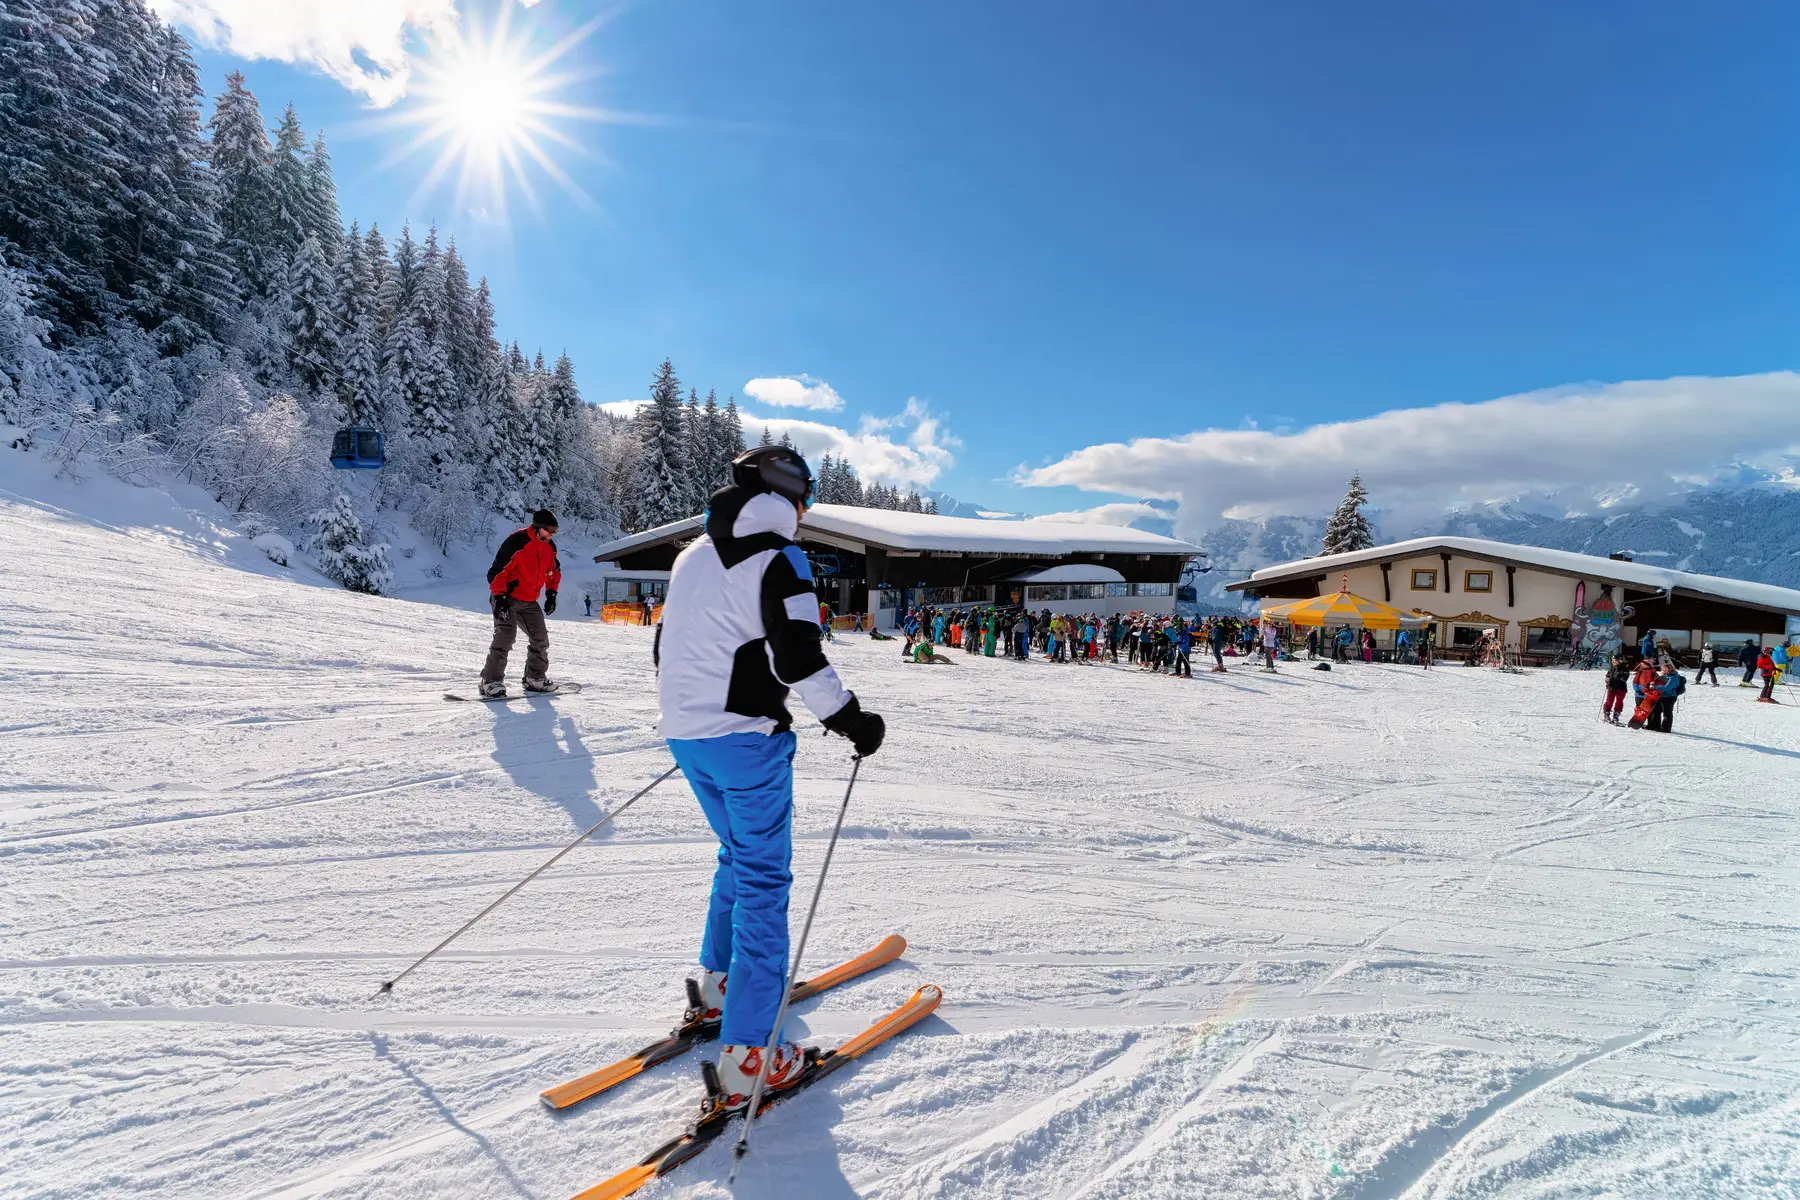 Ski slope in Austria